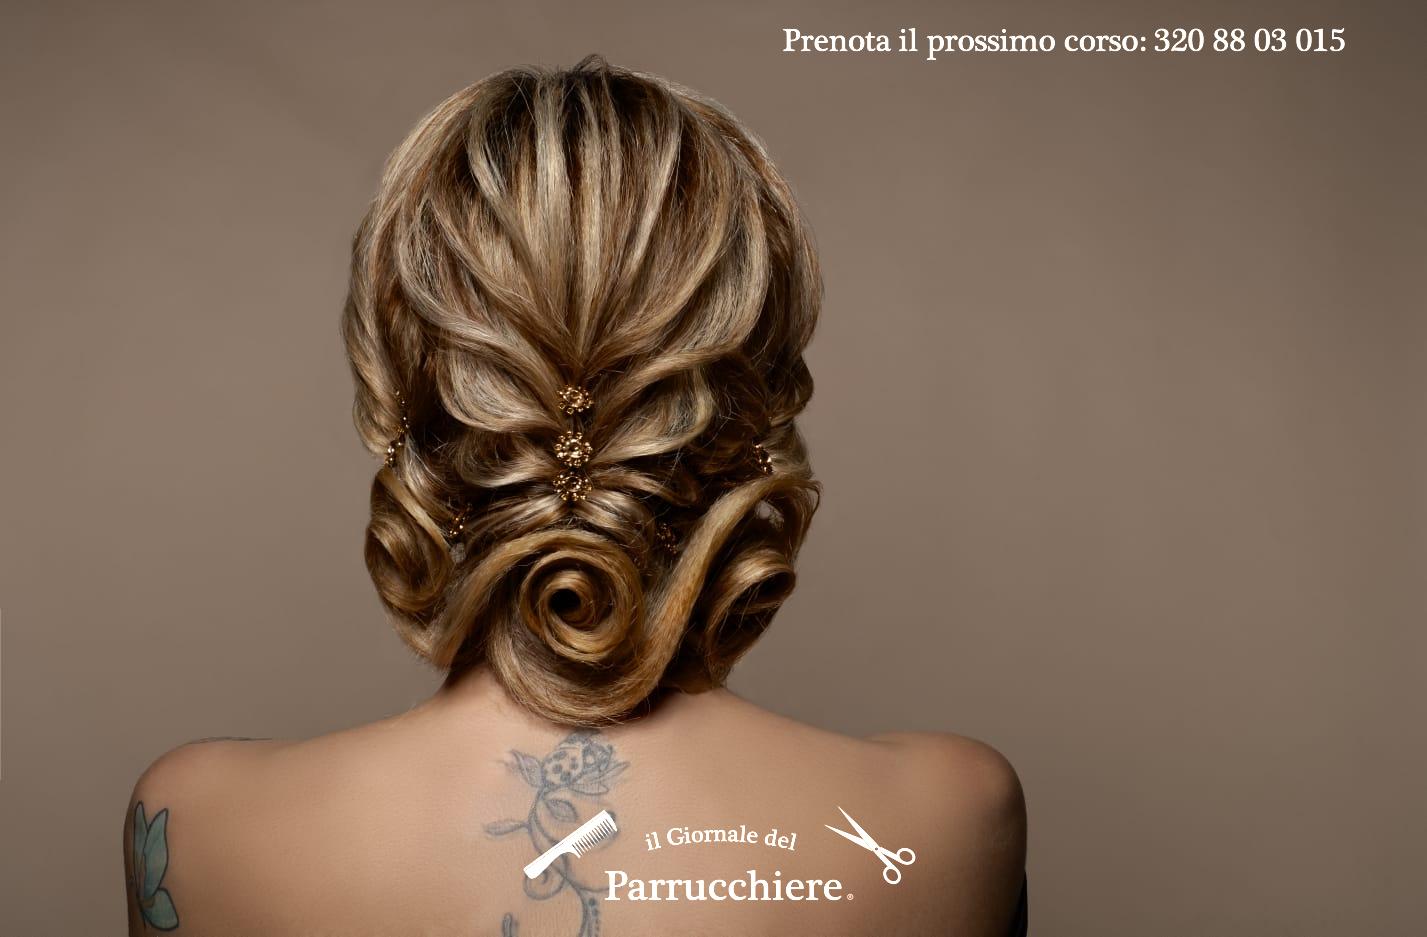 Corso Acconciature Sposa, Brindisi, il Giornale del Parrucchiere